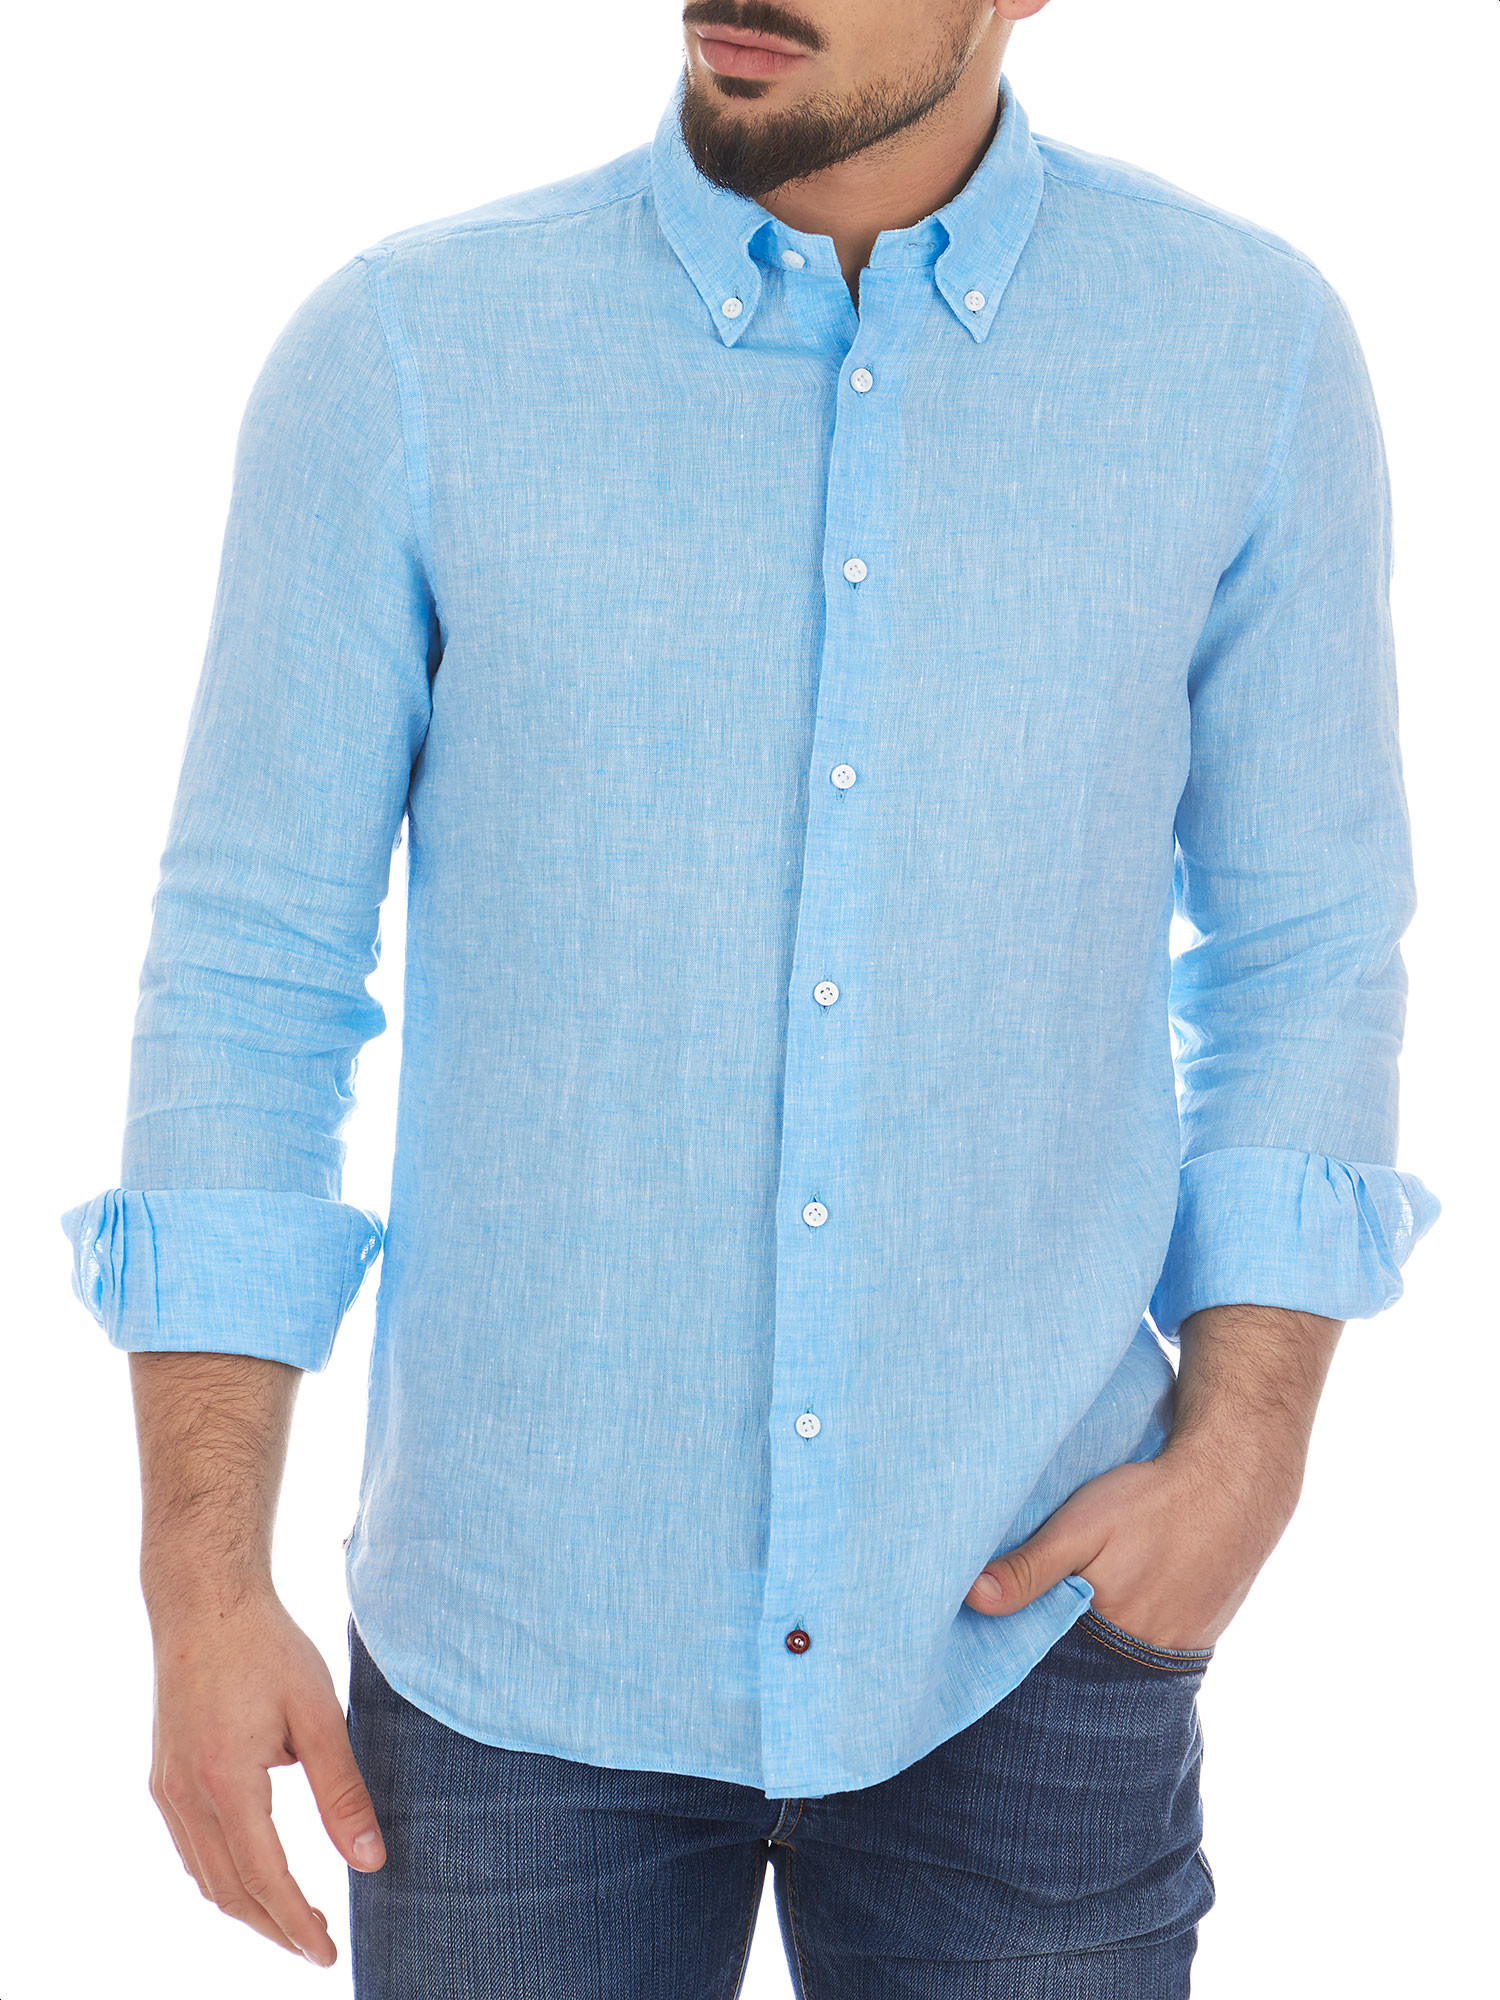 Turquoise men's shirt 100% linen - Càrrel